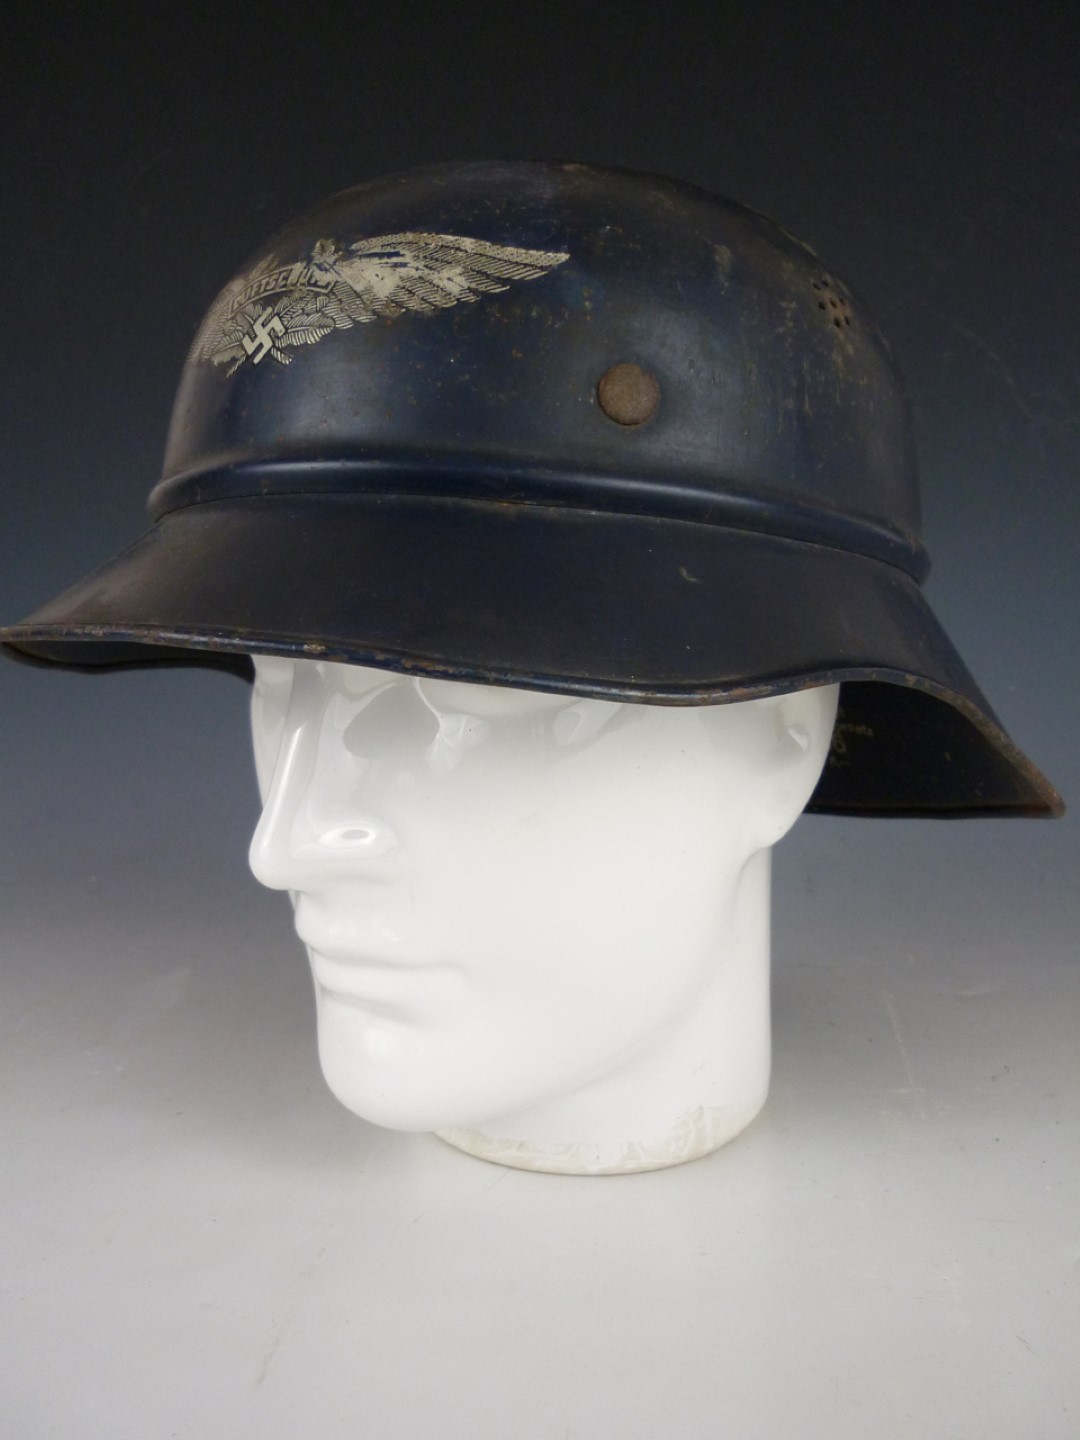 A Second World War German Luftschutze helmet